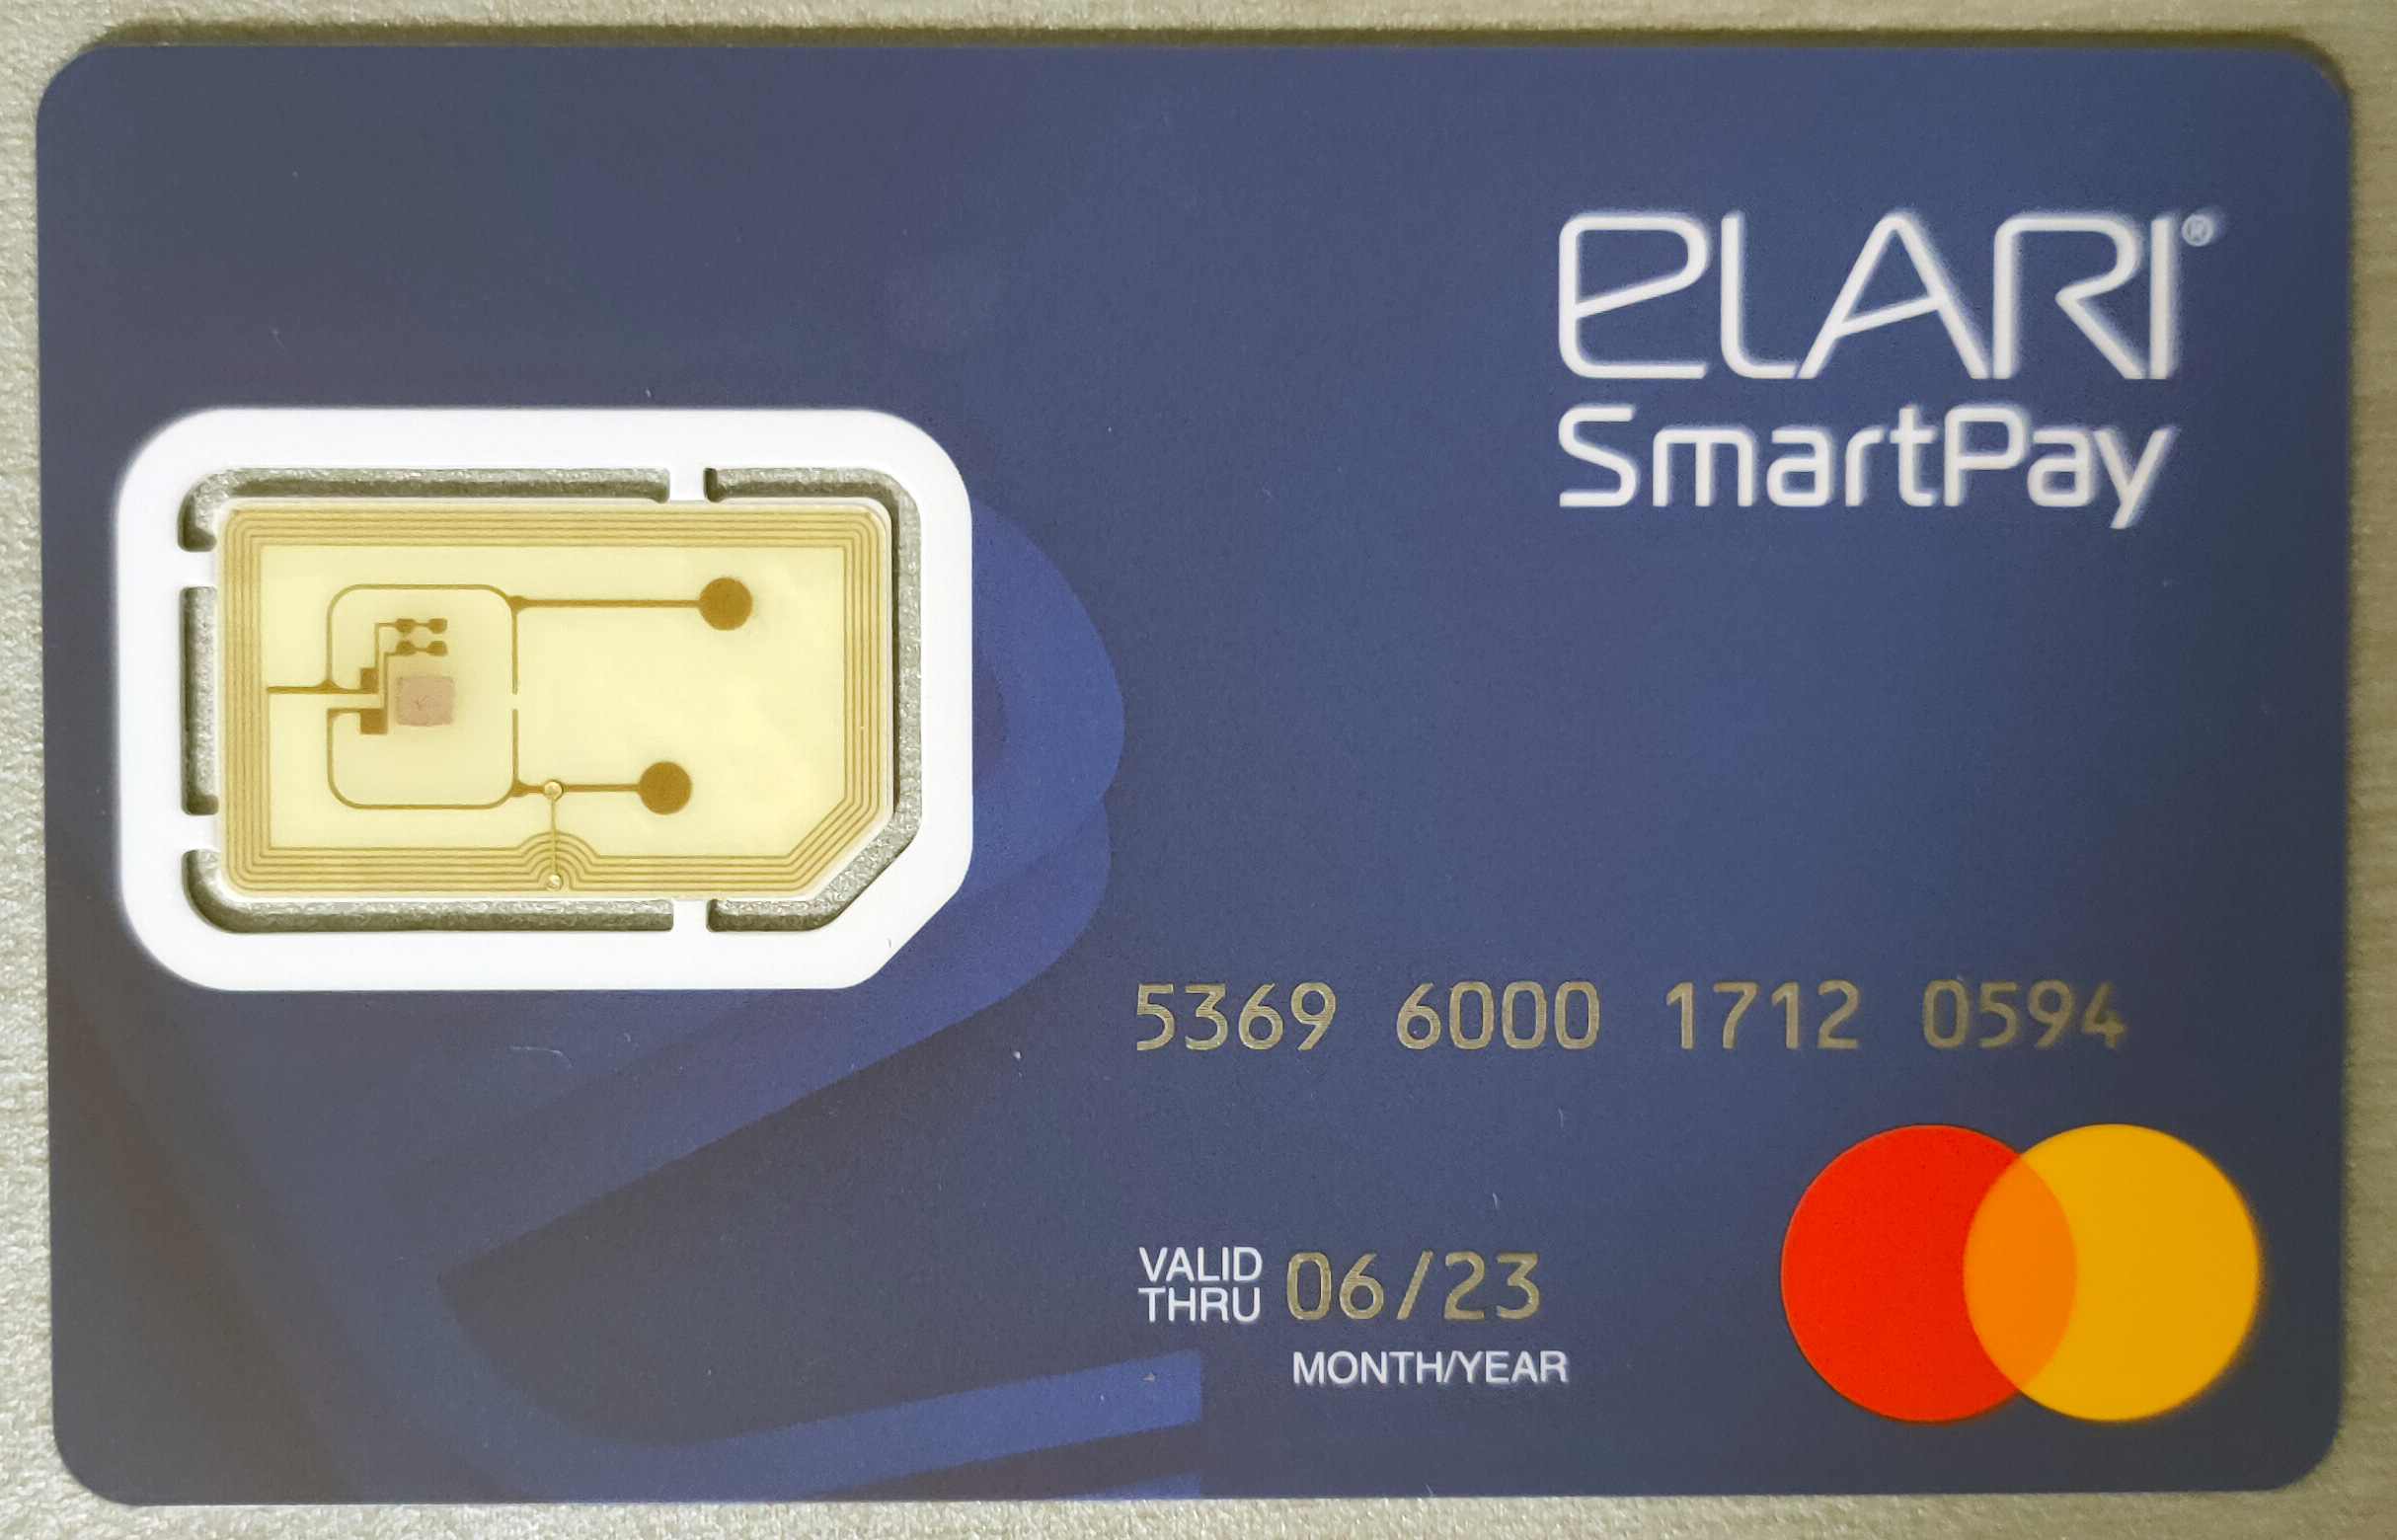 Power Card Elari. Браслет Elari SMARTPAY кошелек на руке, для бесконтактных платежей Red. Может ли размагнититься банковская карта от телефона.